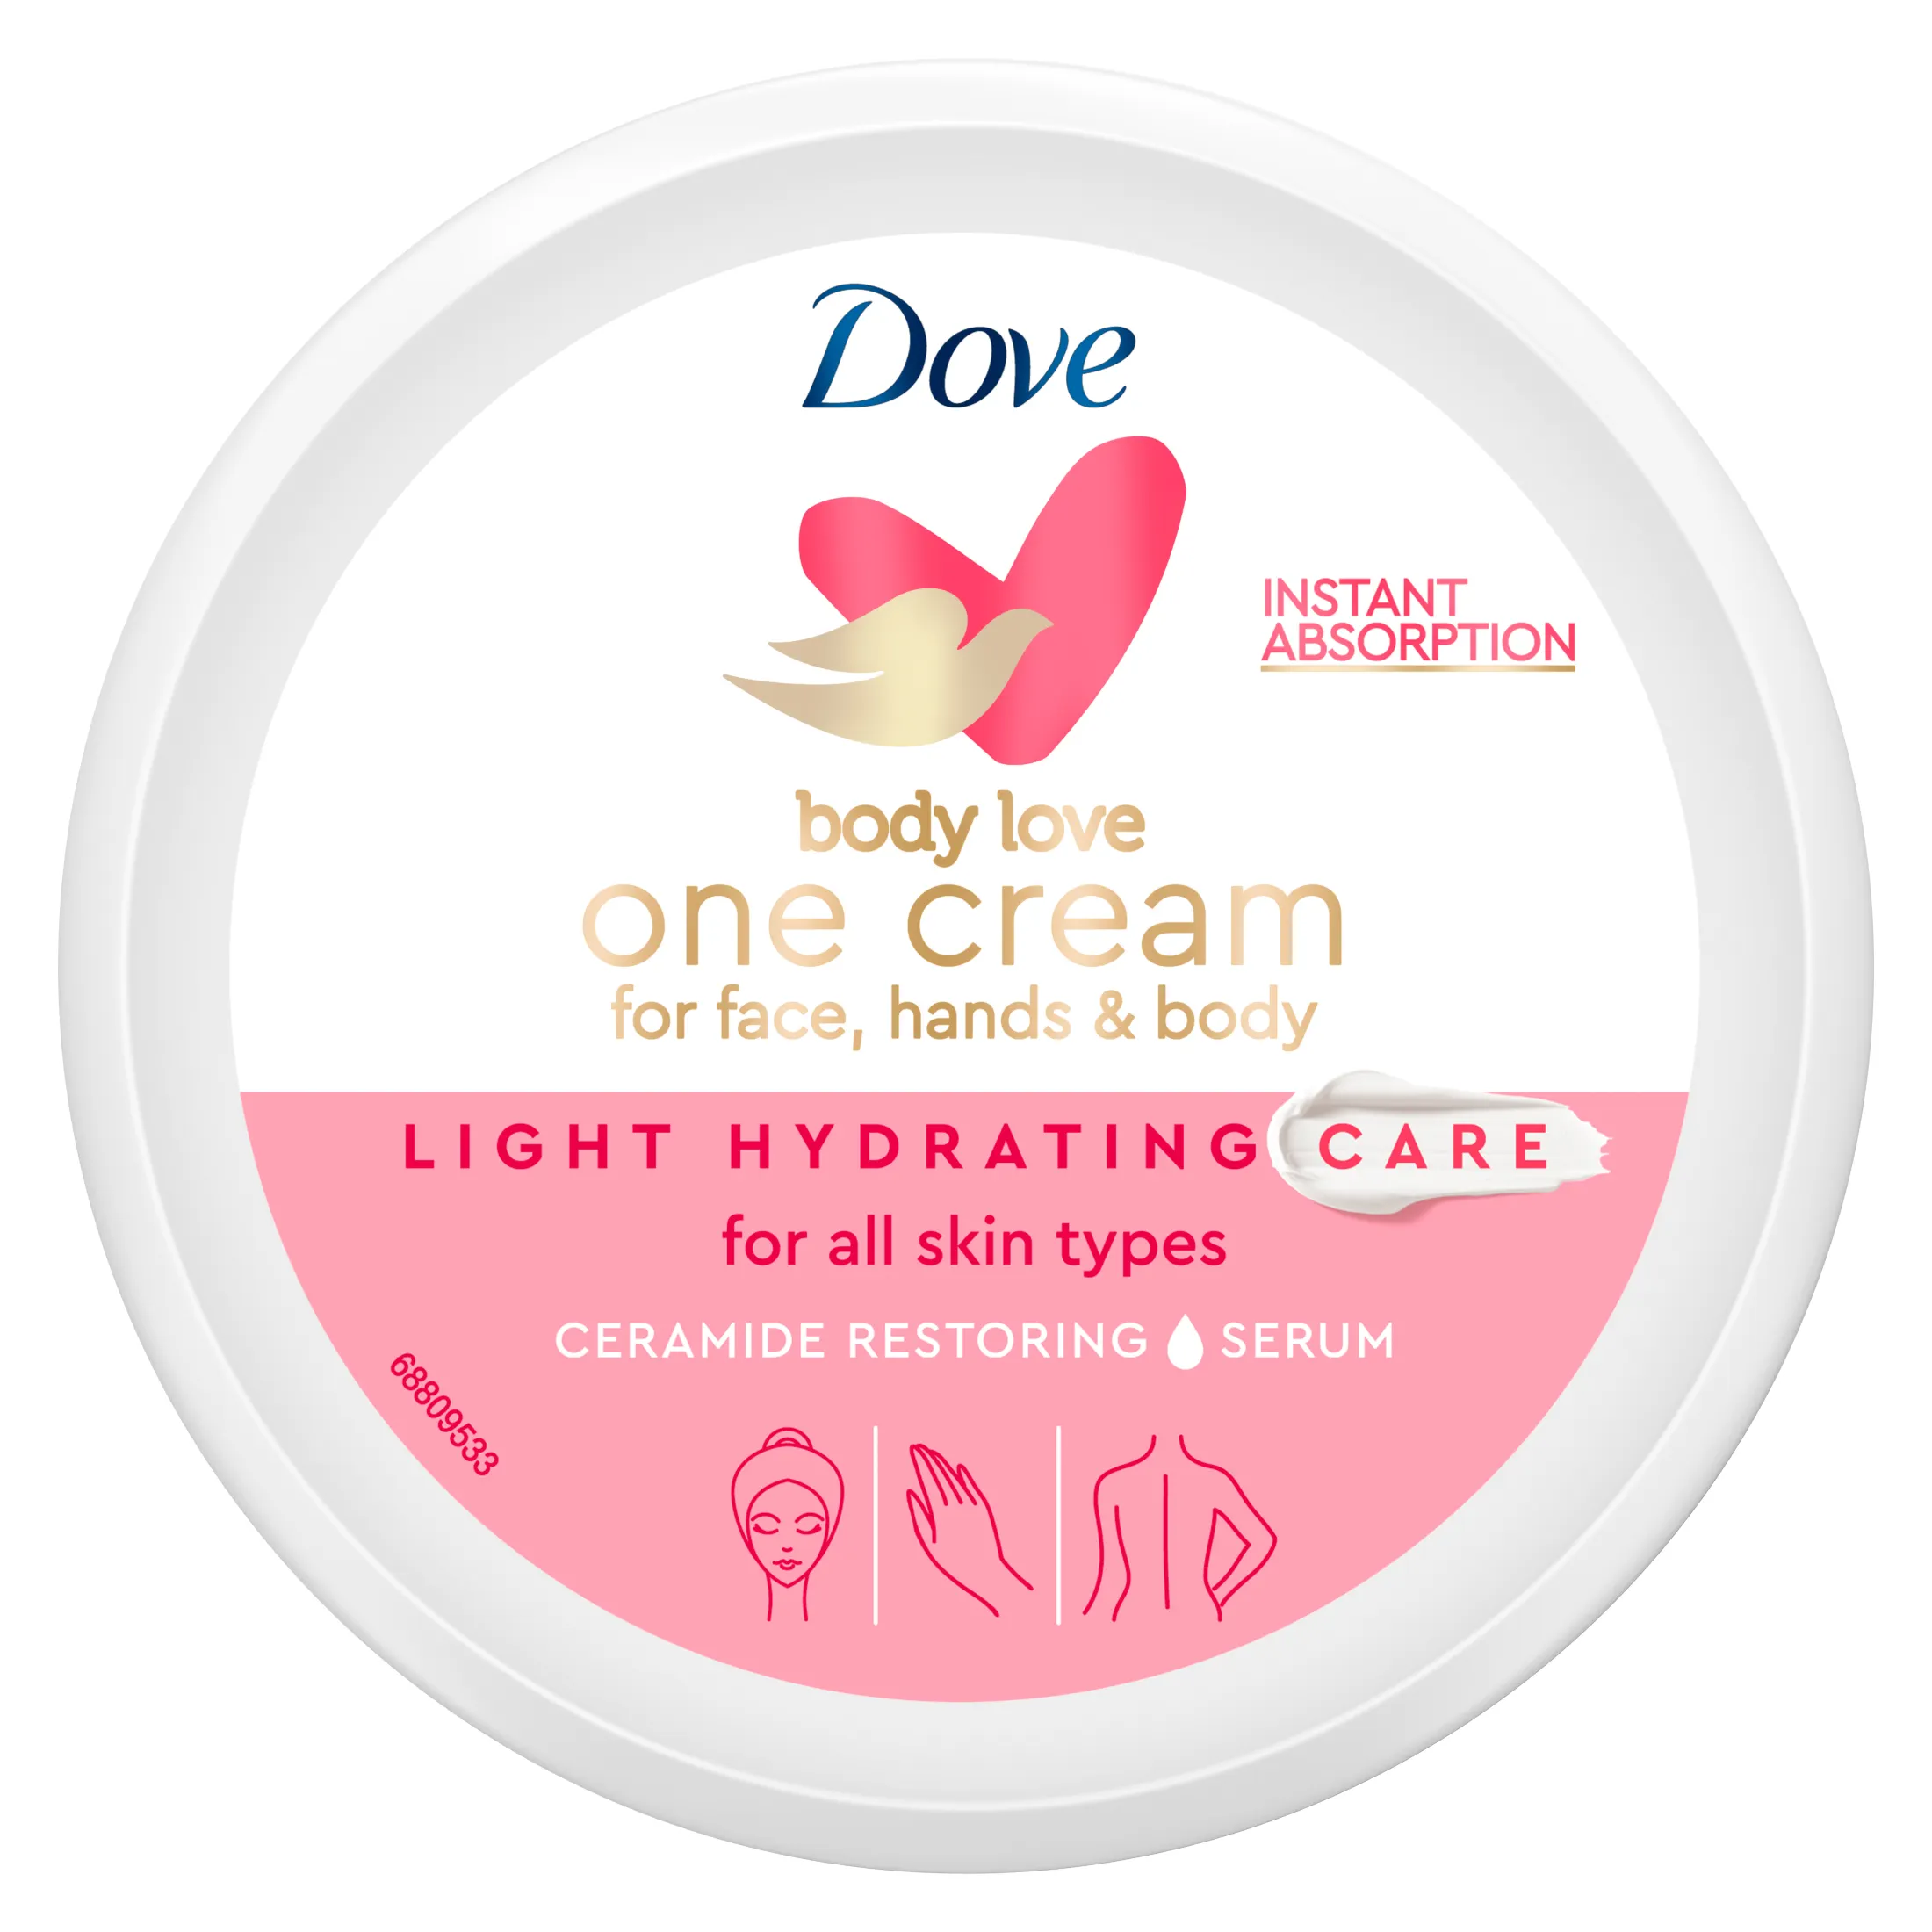 Dove Crema de manos, cara y cuerpo para todo tipo de piel Hidratación Light que hidrata por 24 horas 250ml